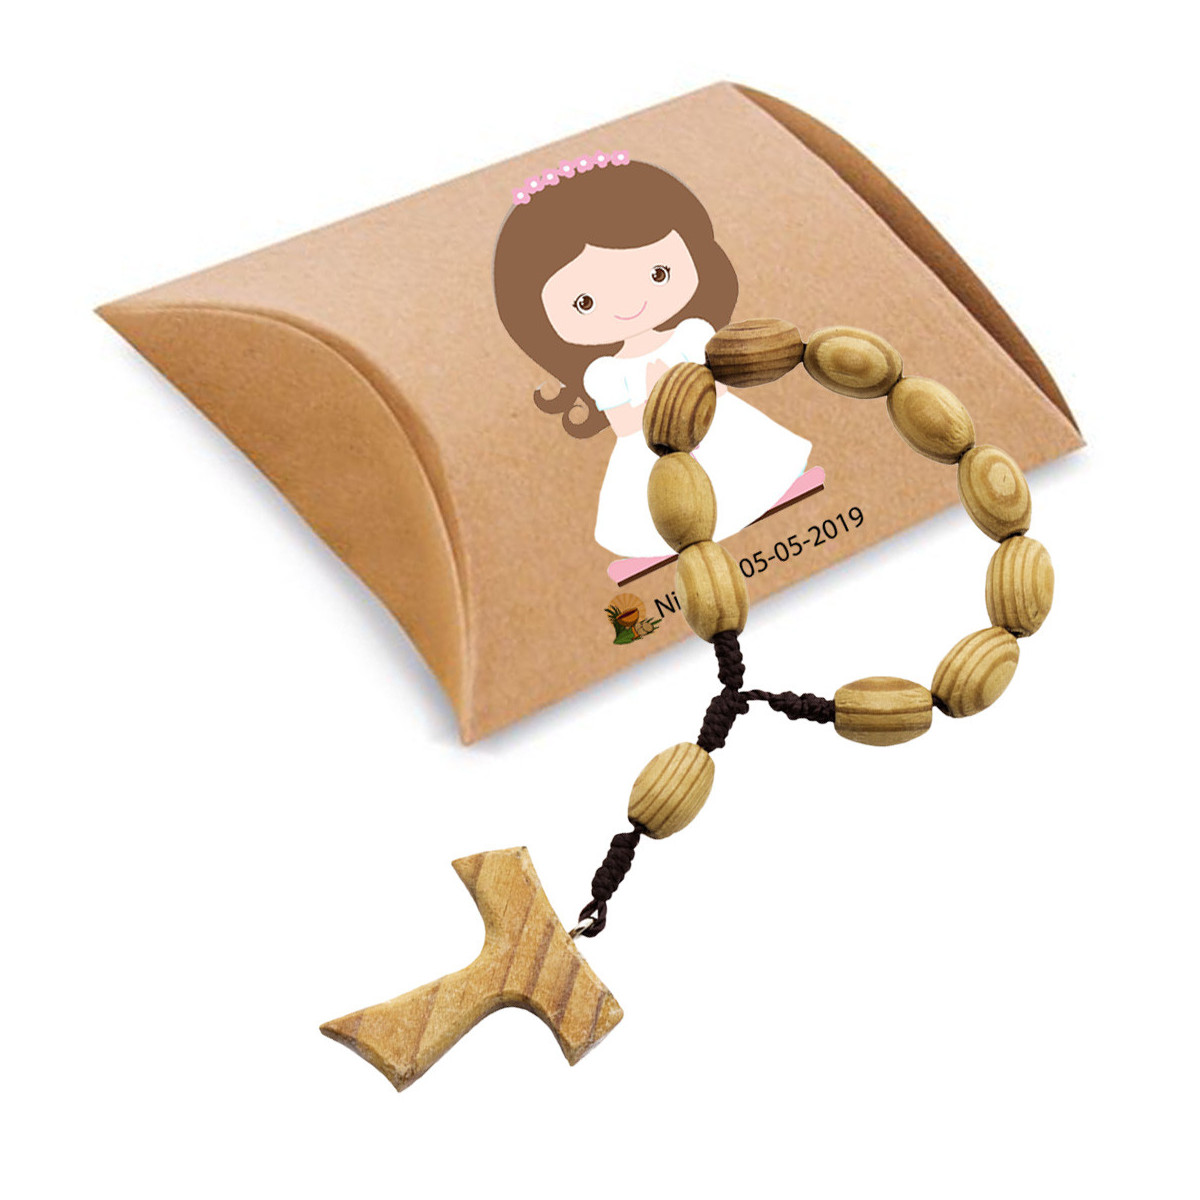 Bracciale rosario in legno presentato in scatola kraft e adesivi per comunione